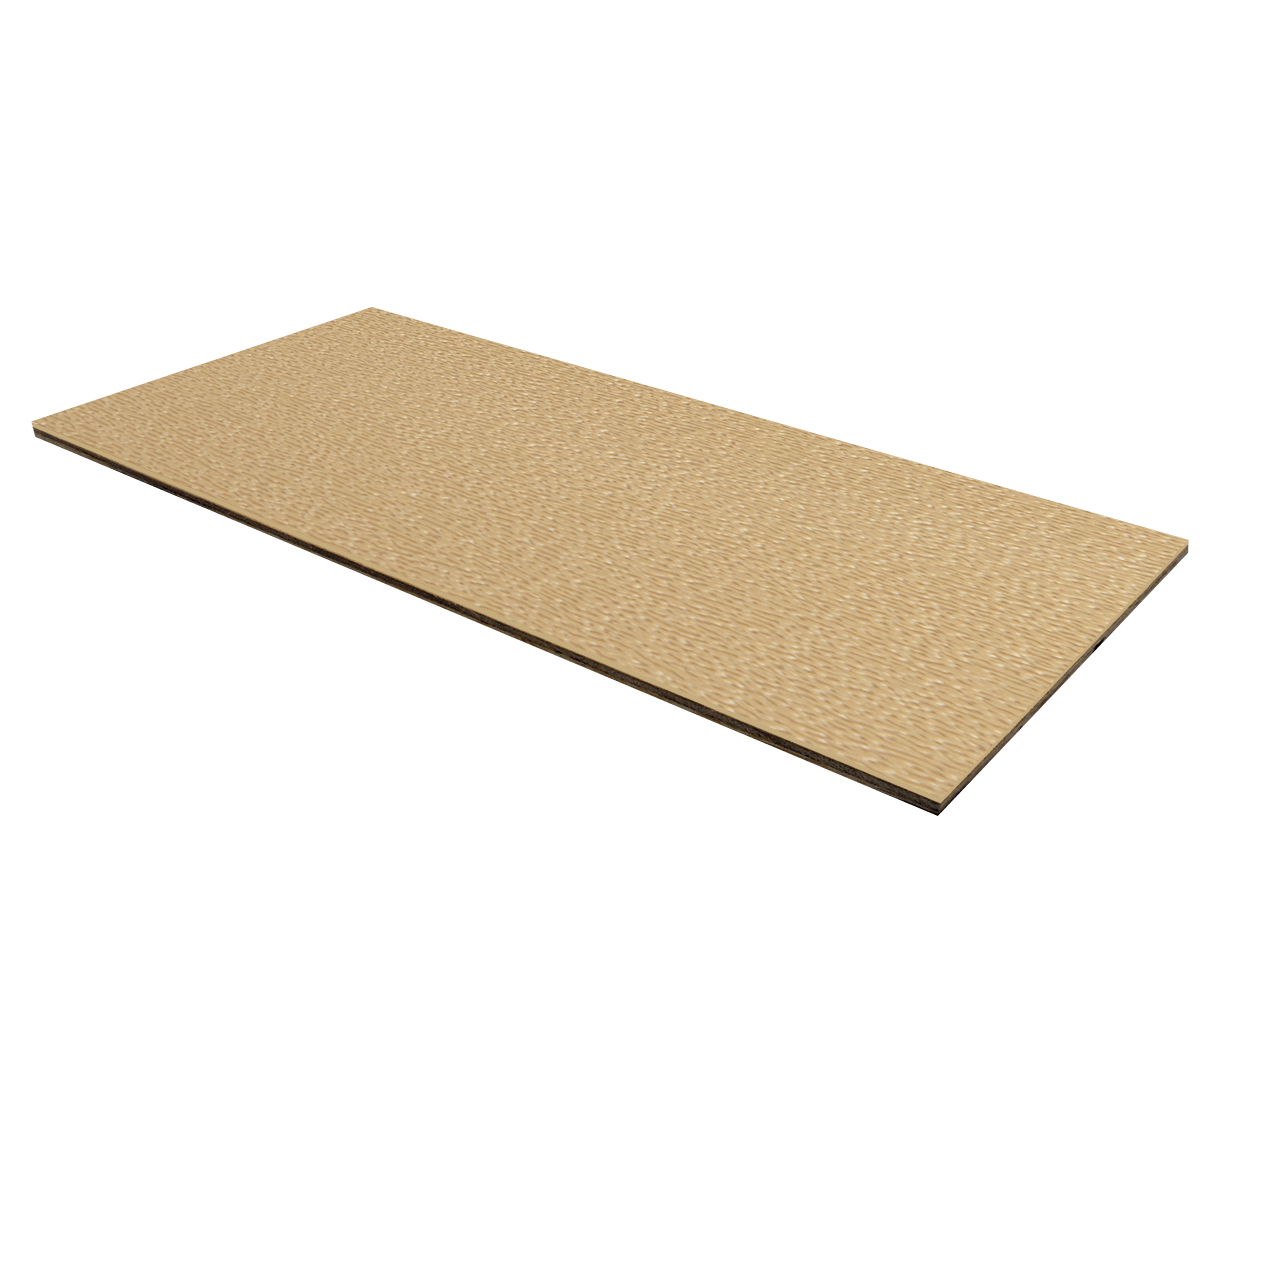 1/8" Luan Plywood ABS Laminate - Desert Tan